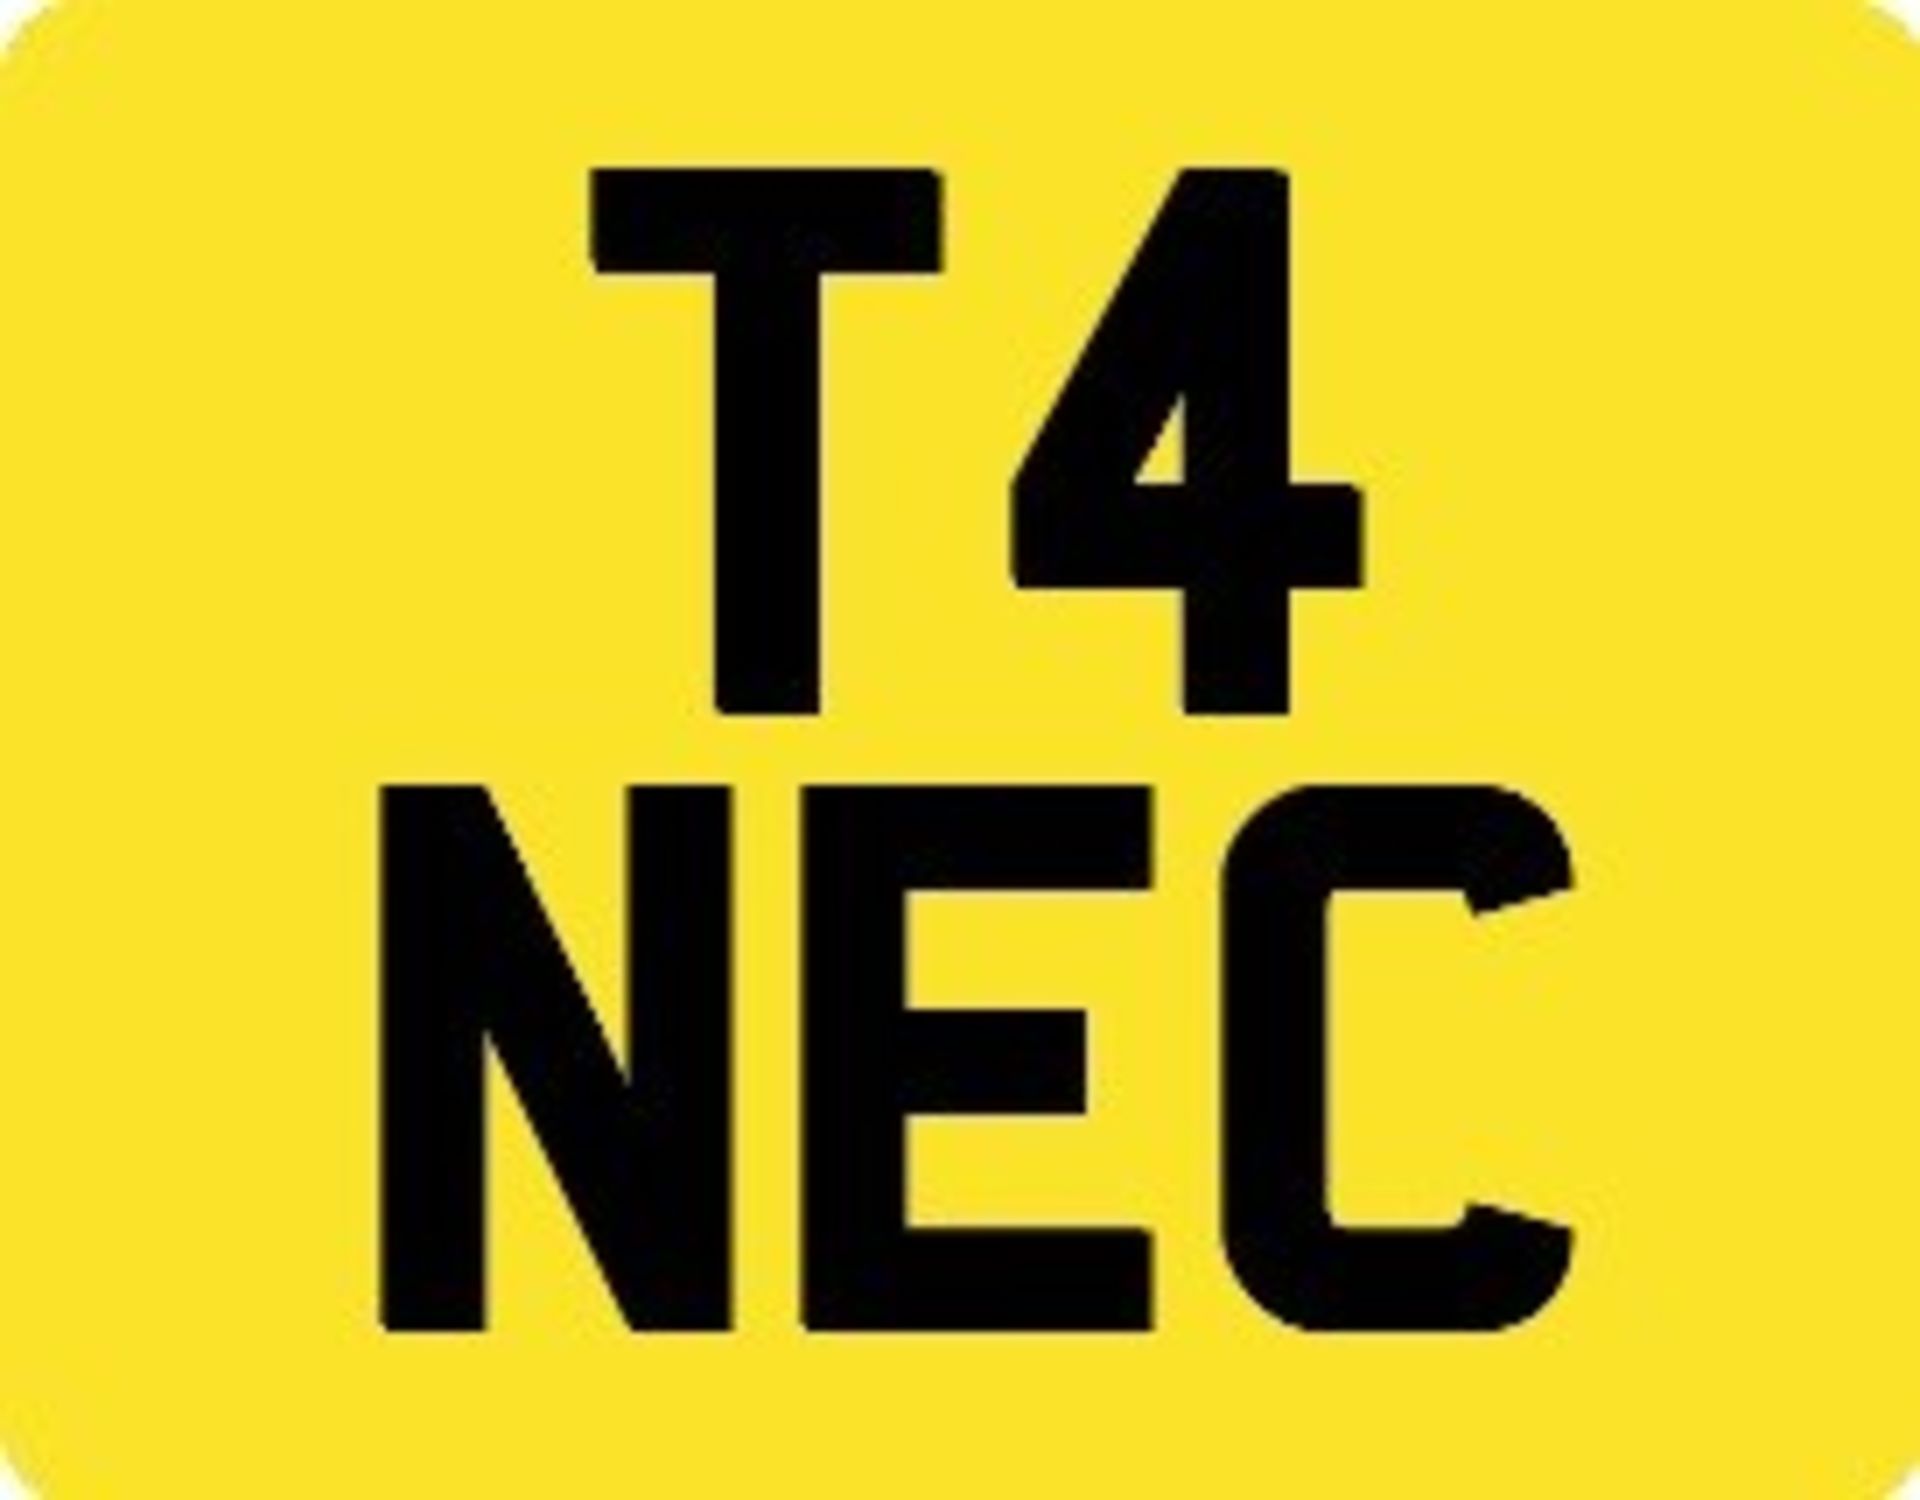 T4 NEC Registration Number